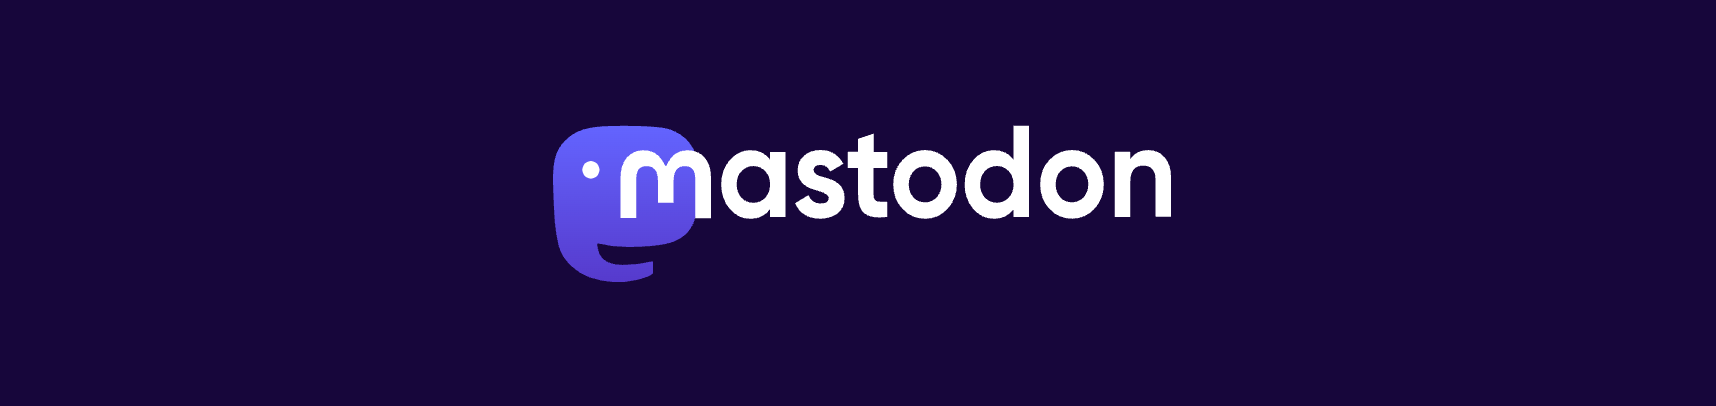 Mastodon a Twitter alternative for higher education